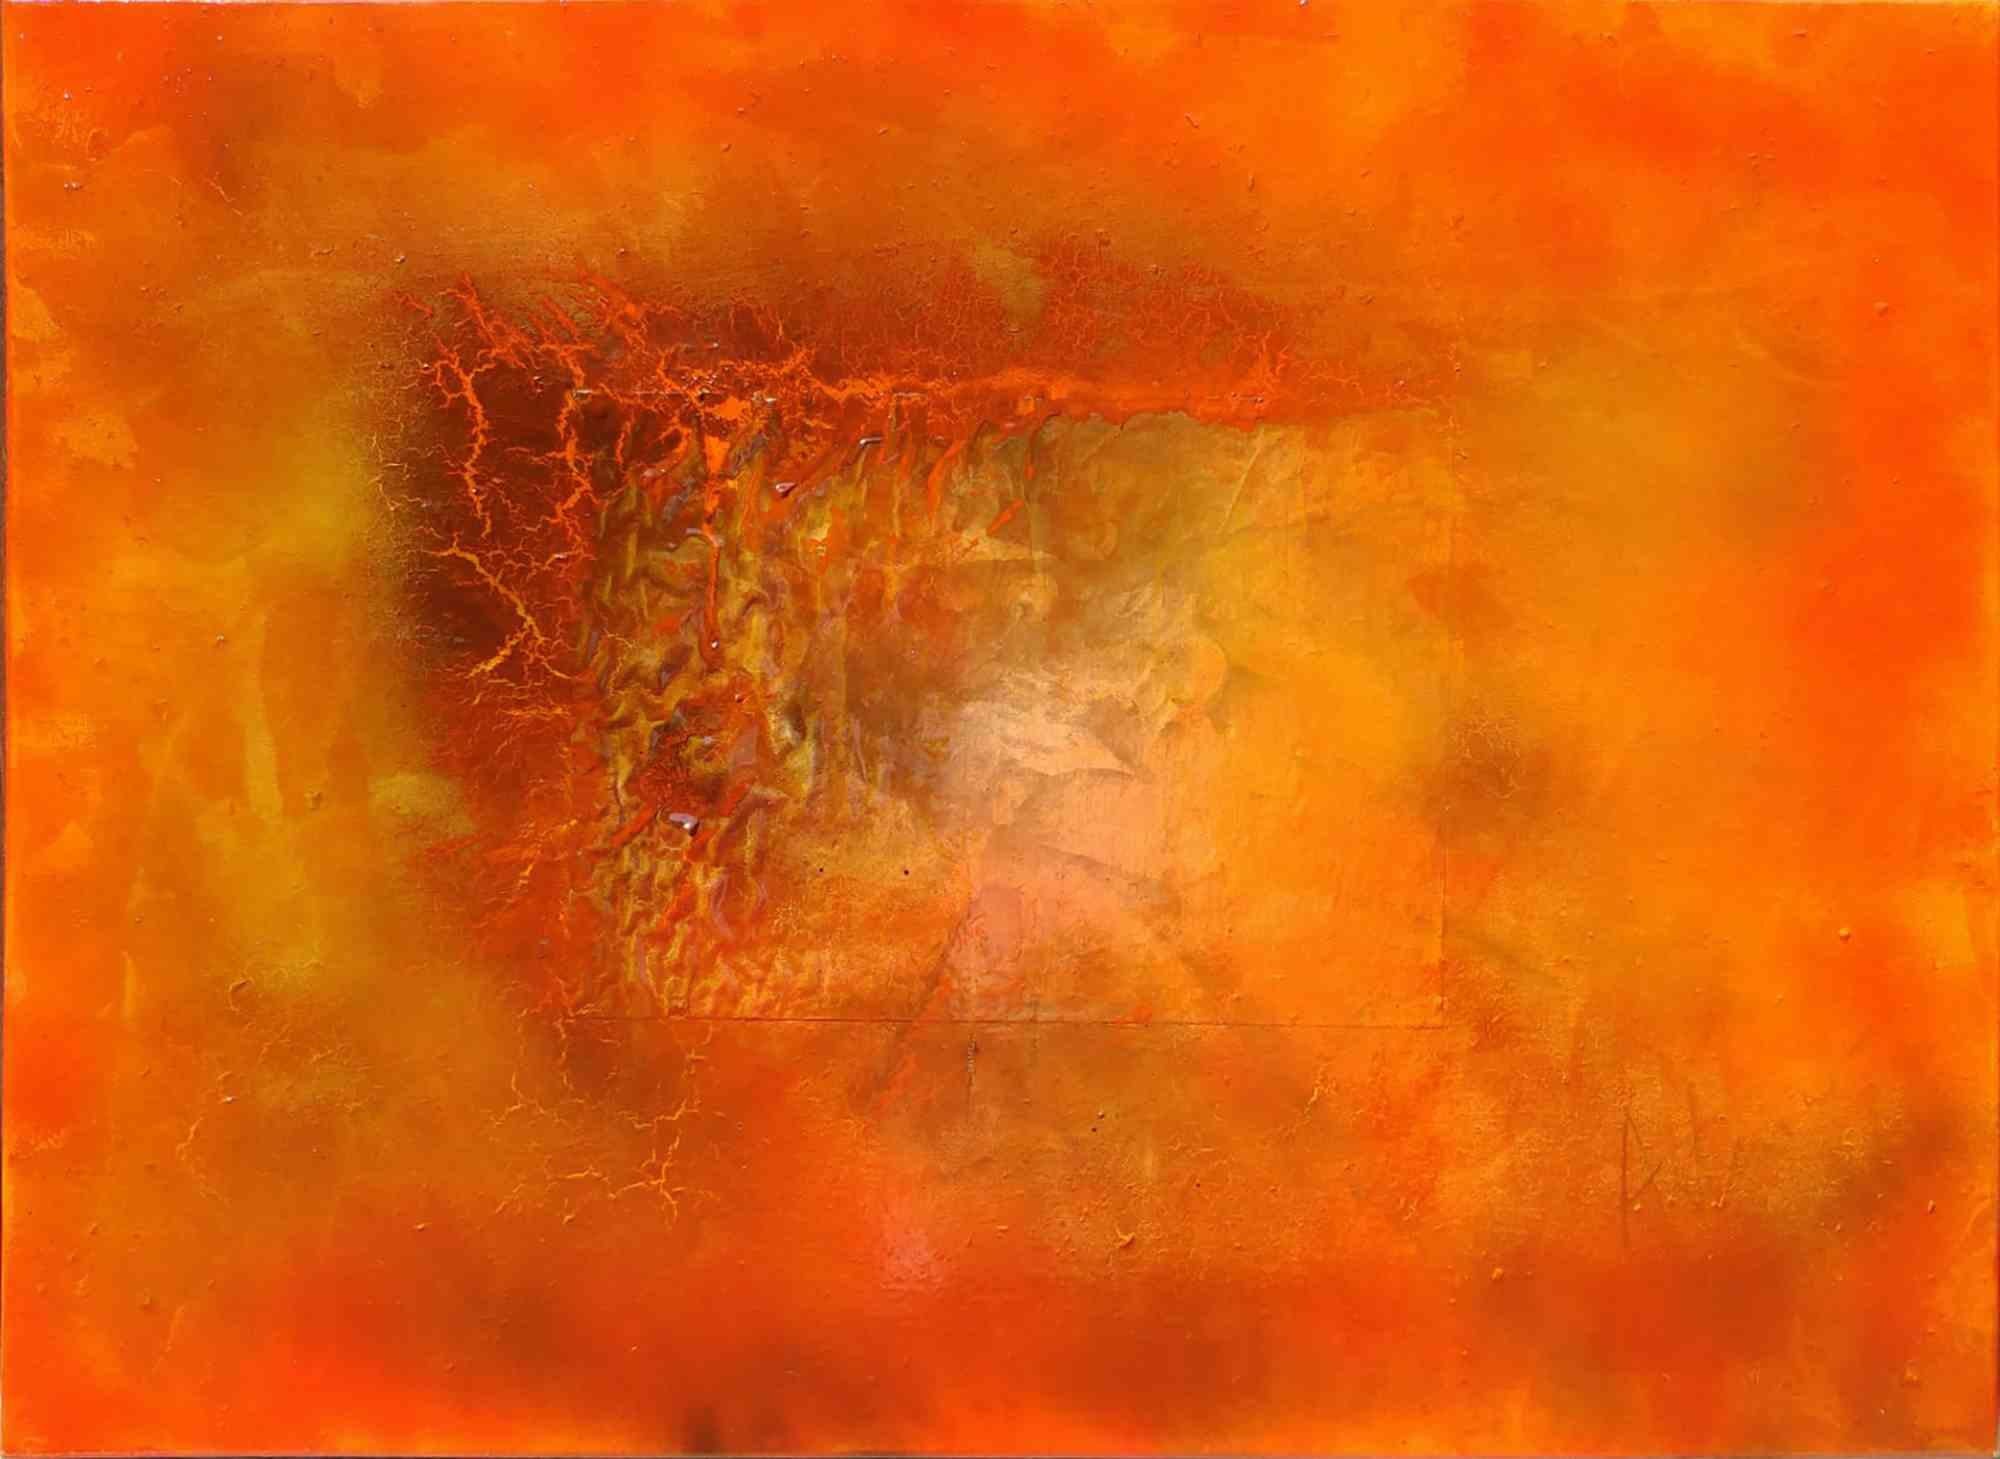 Das Werk trägt den Titel "Scorci d'infinito red border n.5" und ist Teil der 80 × 60 cm großen Serie "Scorci di infinito" des Künstlers Artemio Ceresa. Die Technik ist Mischtechnik auf Leinwand und die Signatur auf der Vorderseite ist Artemio . Das